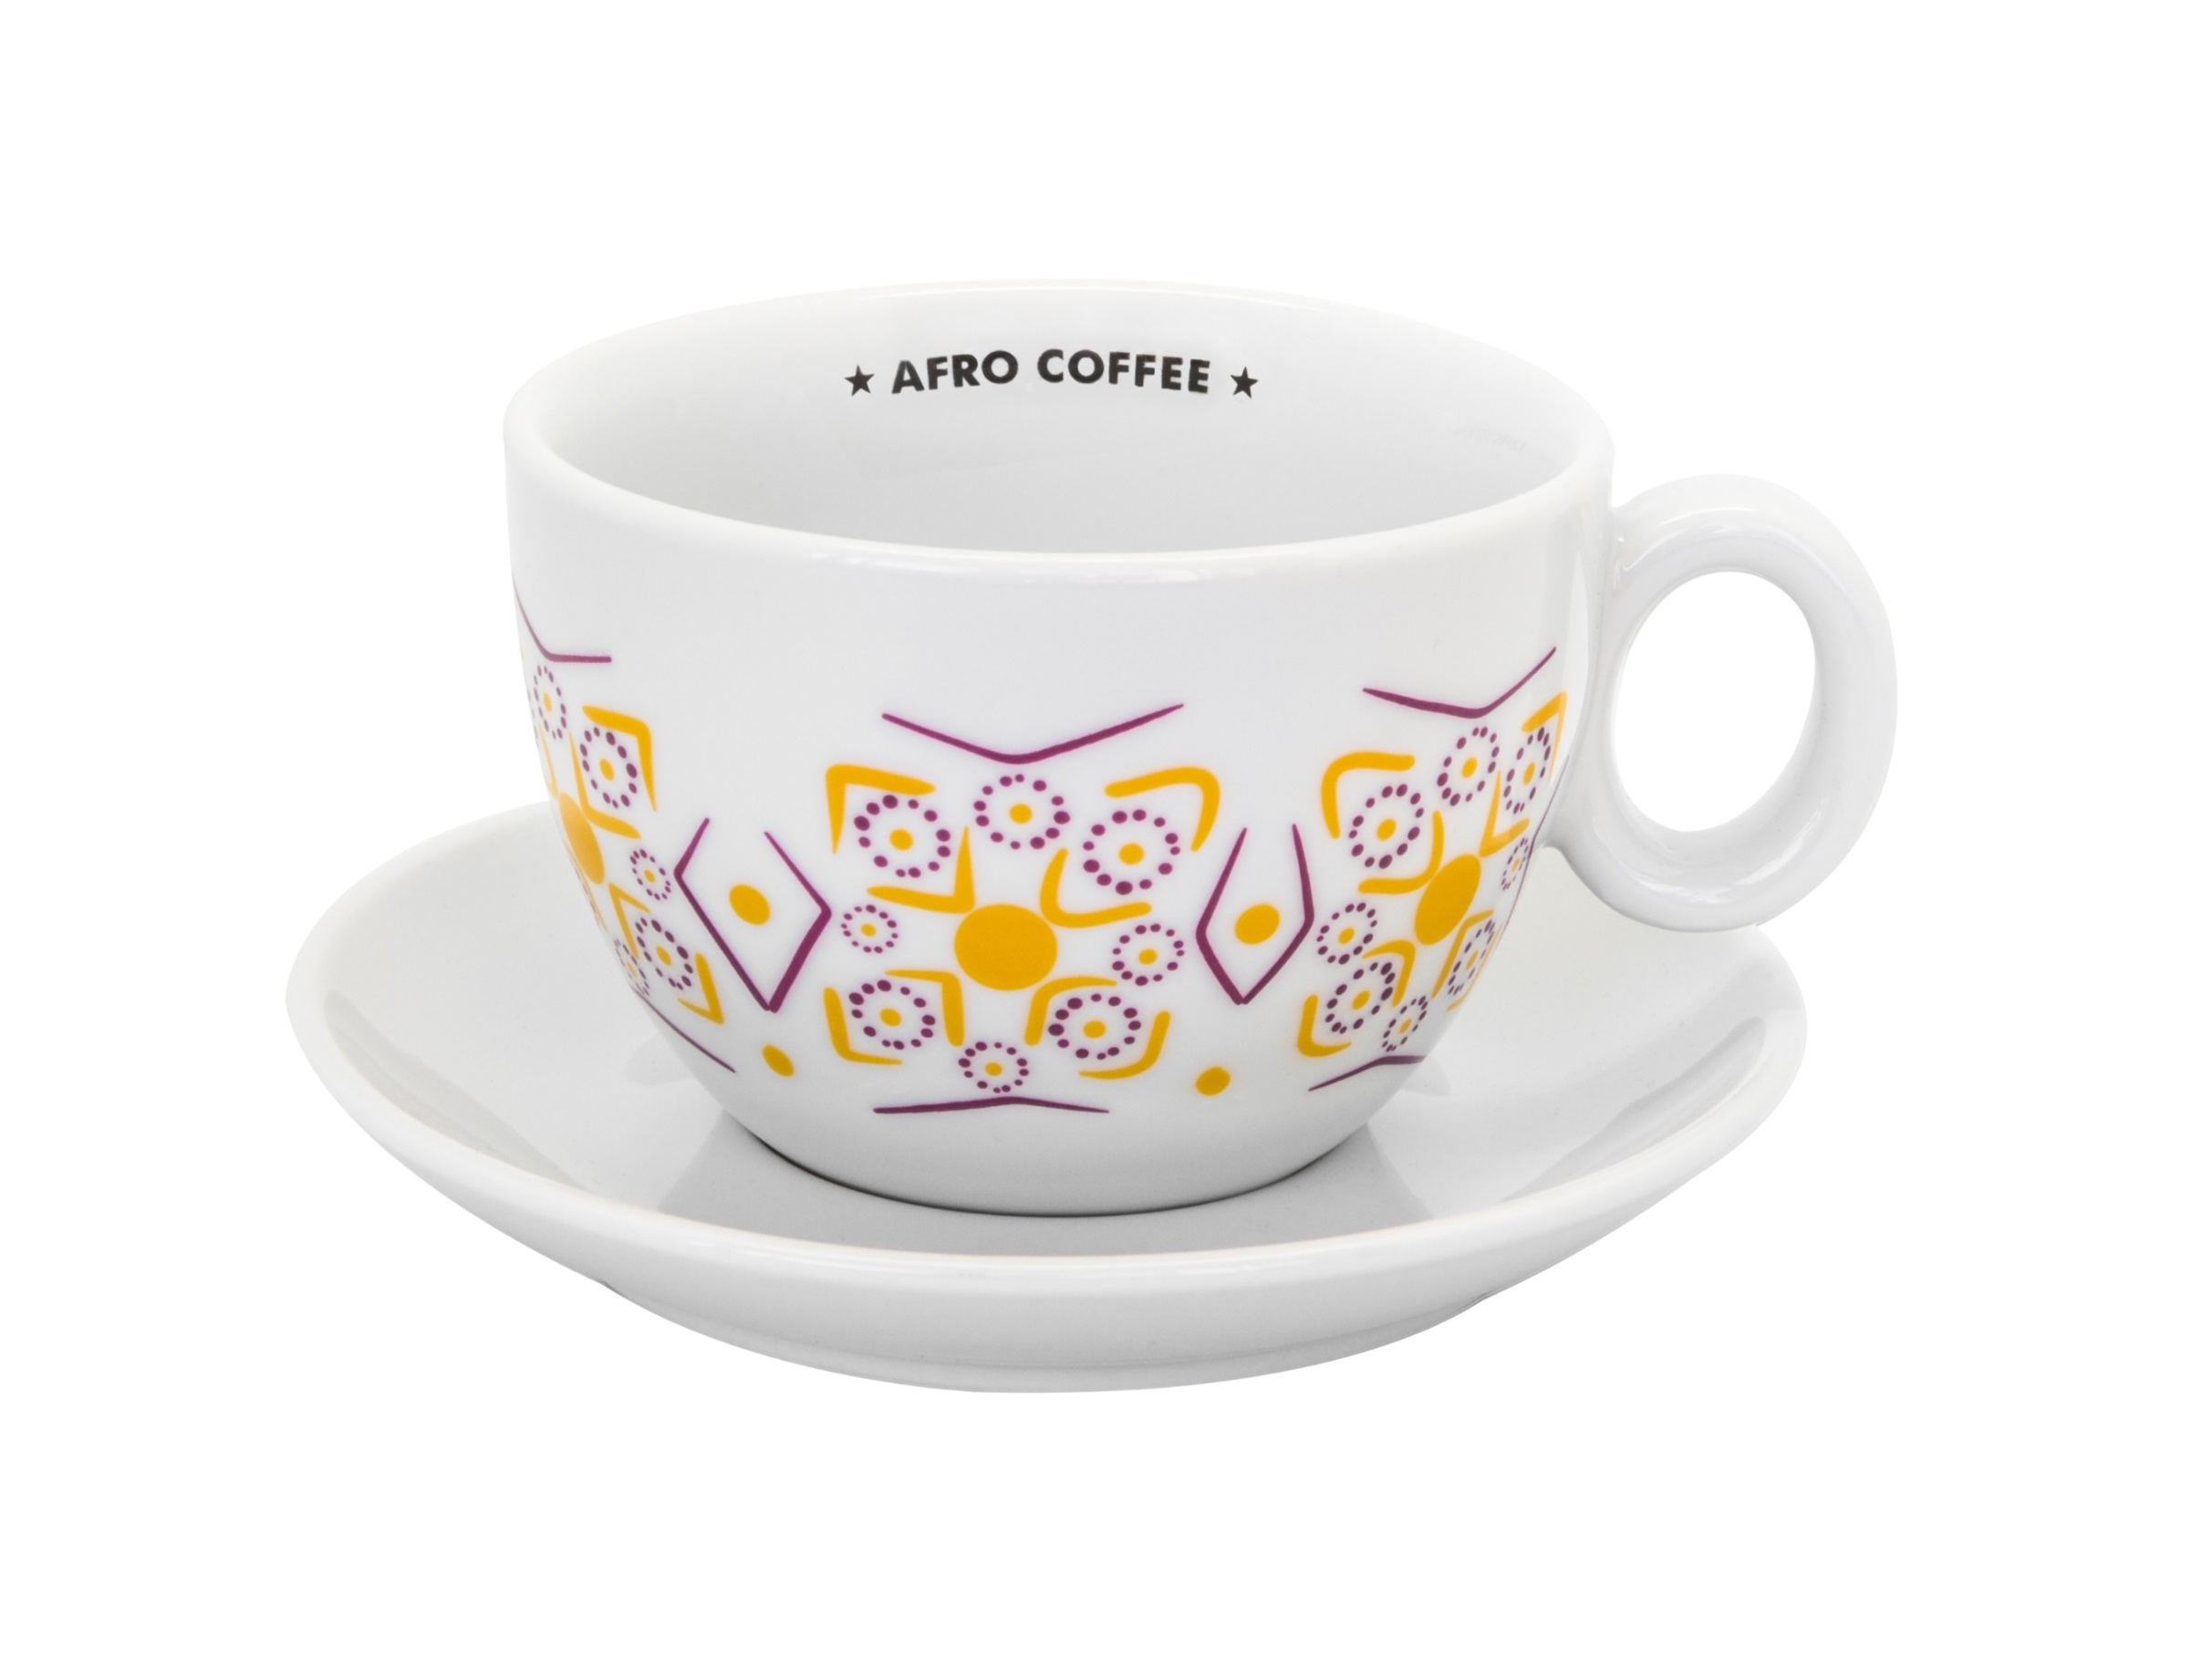 Cafe Latte Tasse – XL, 2nd edition